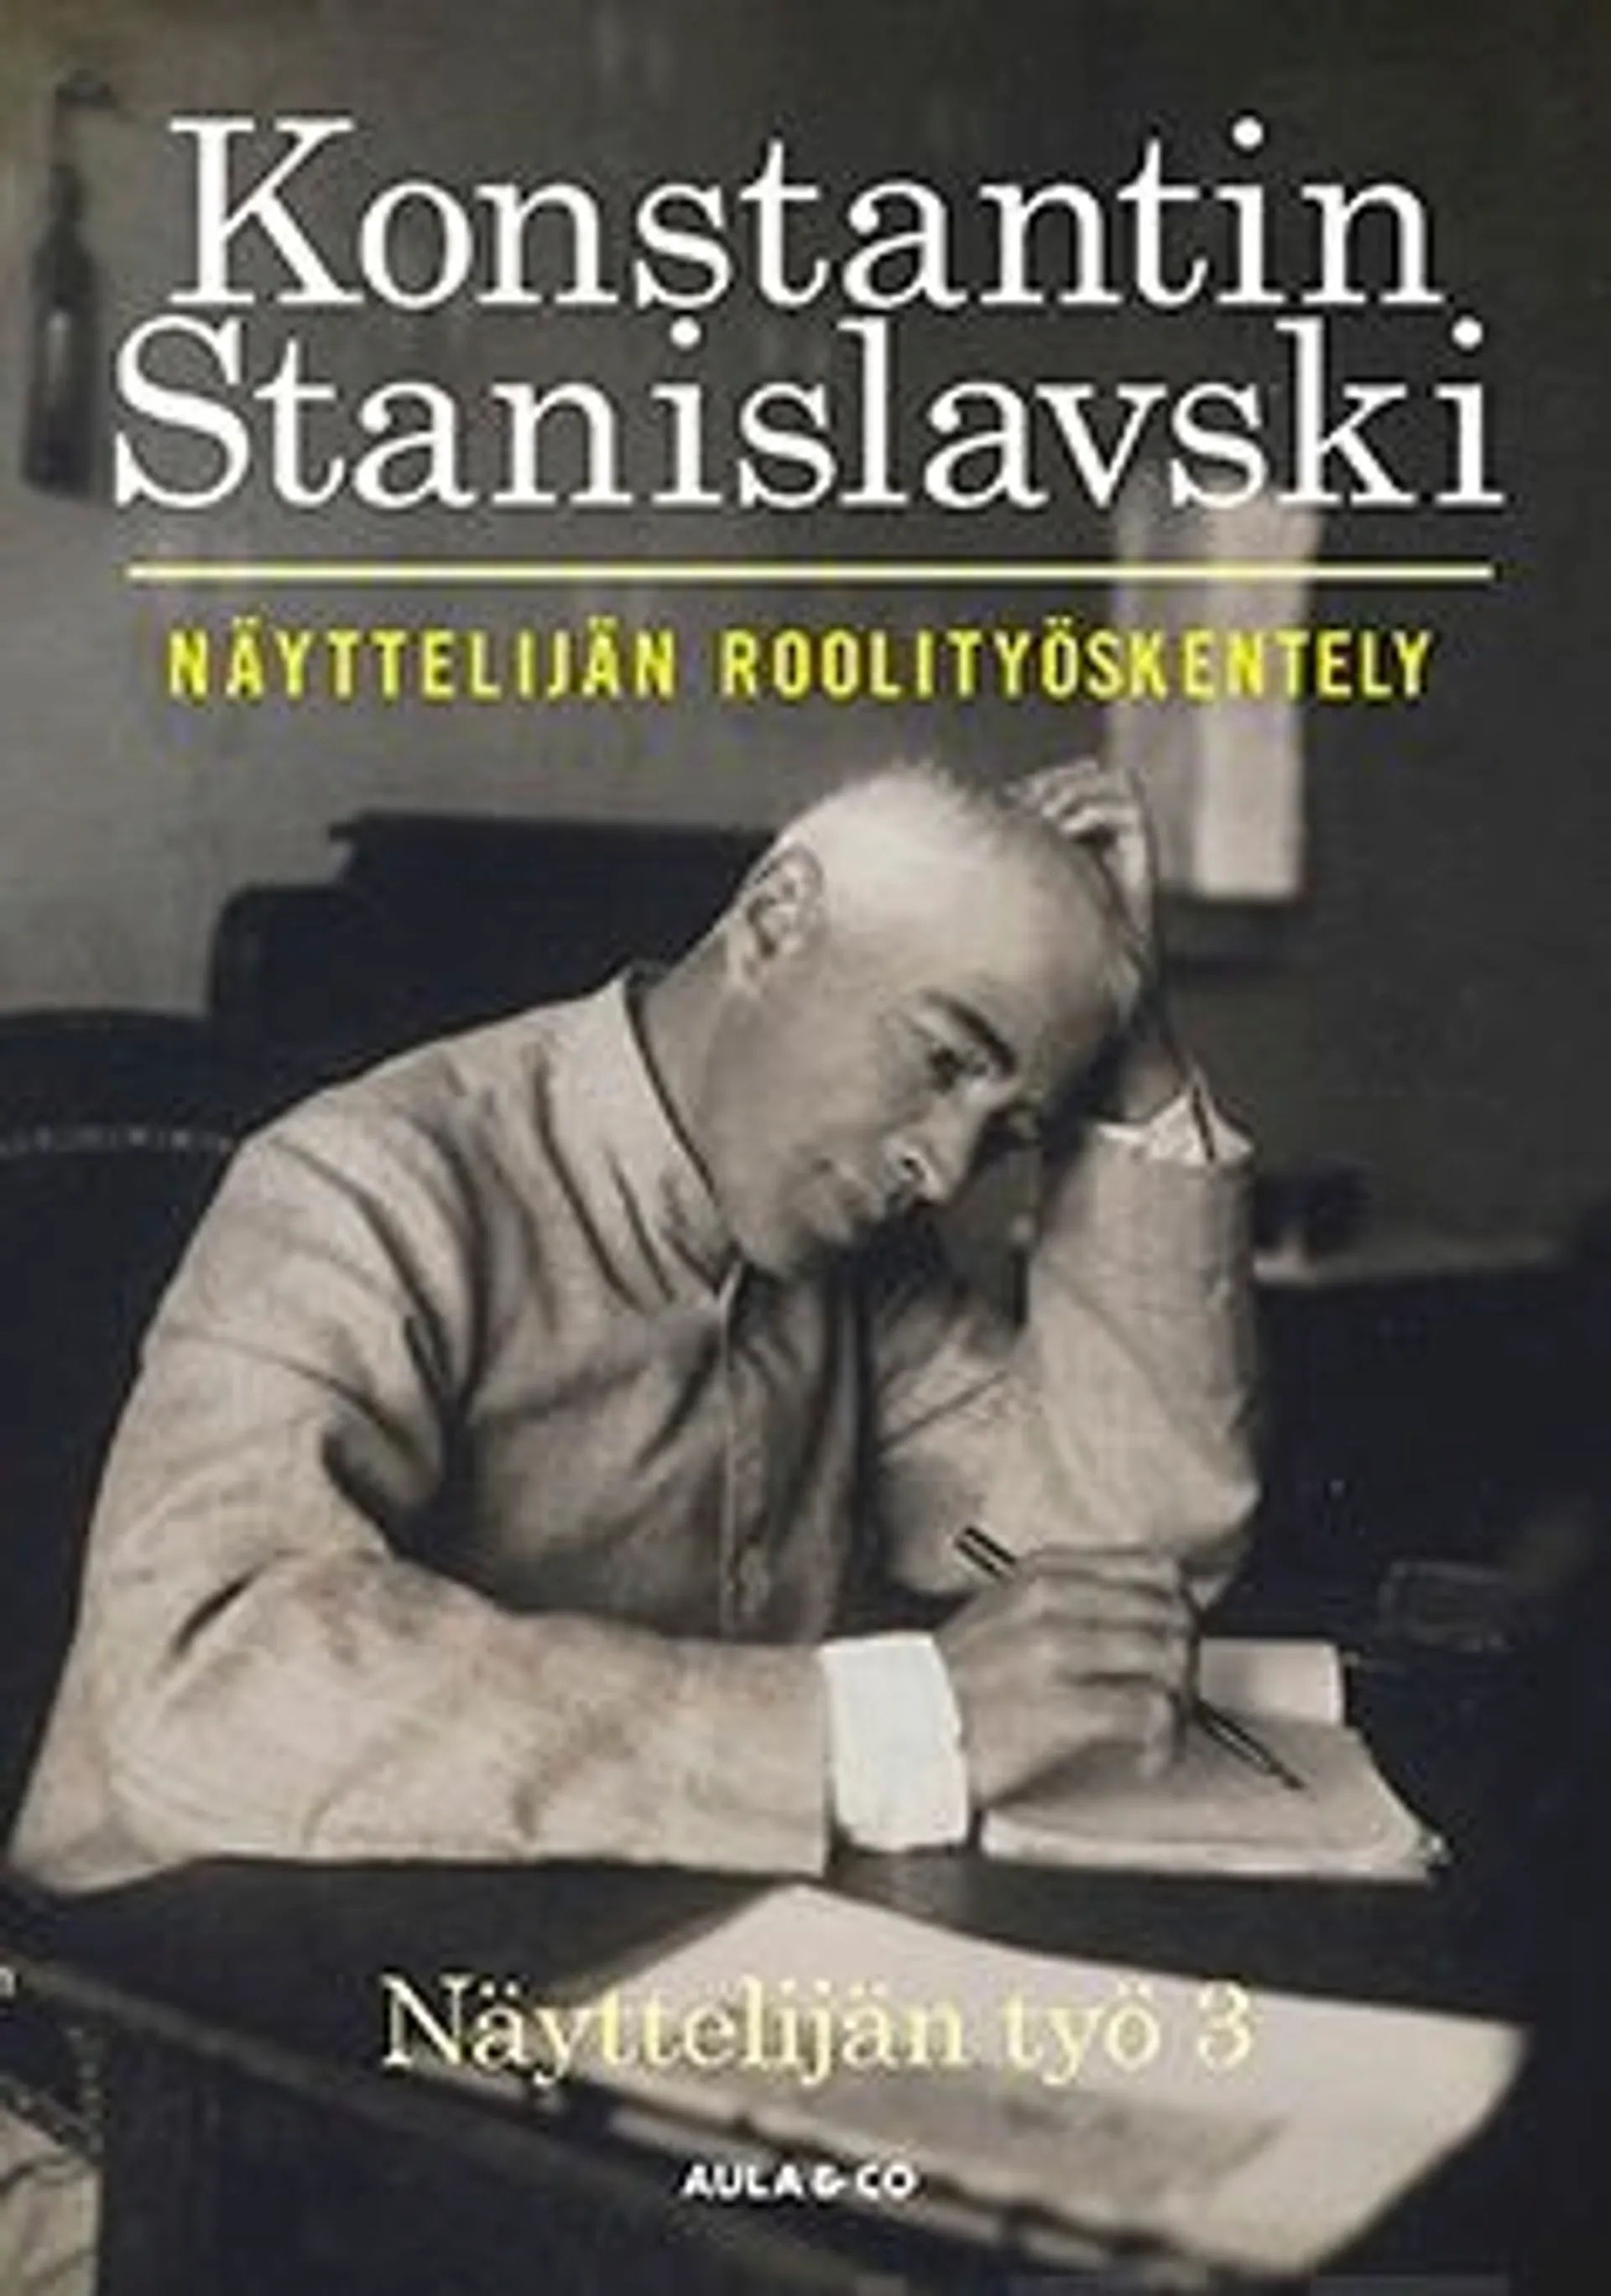 Stanislavski, Näyttelijän roolityöskentely